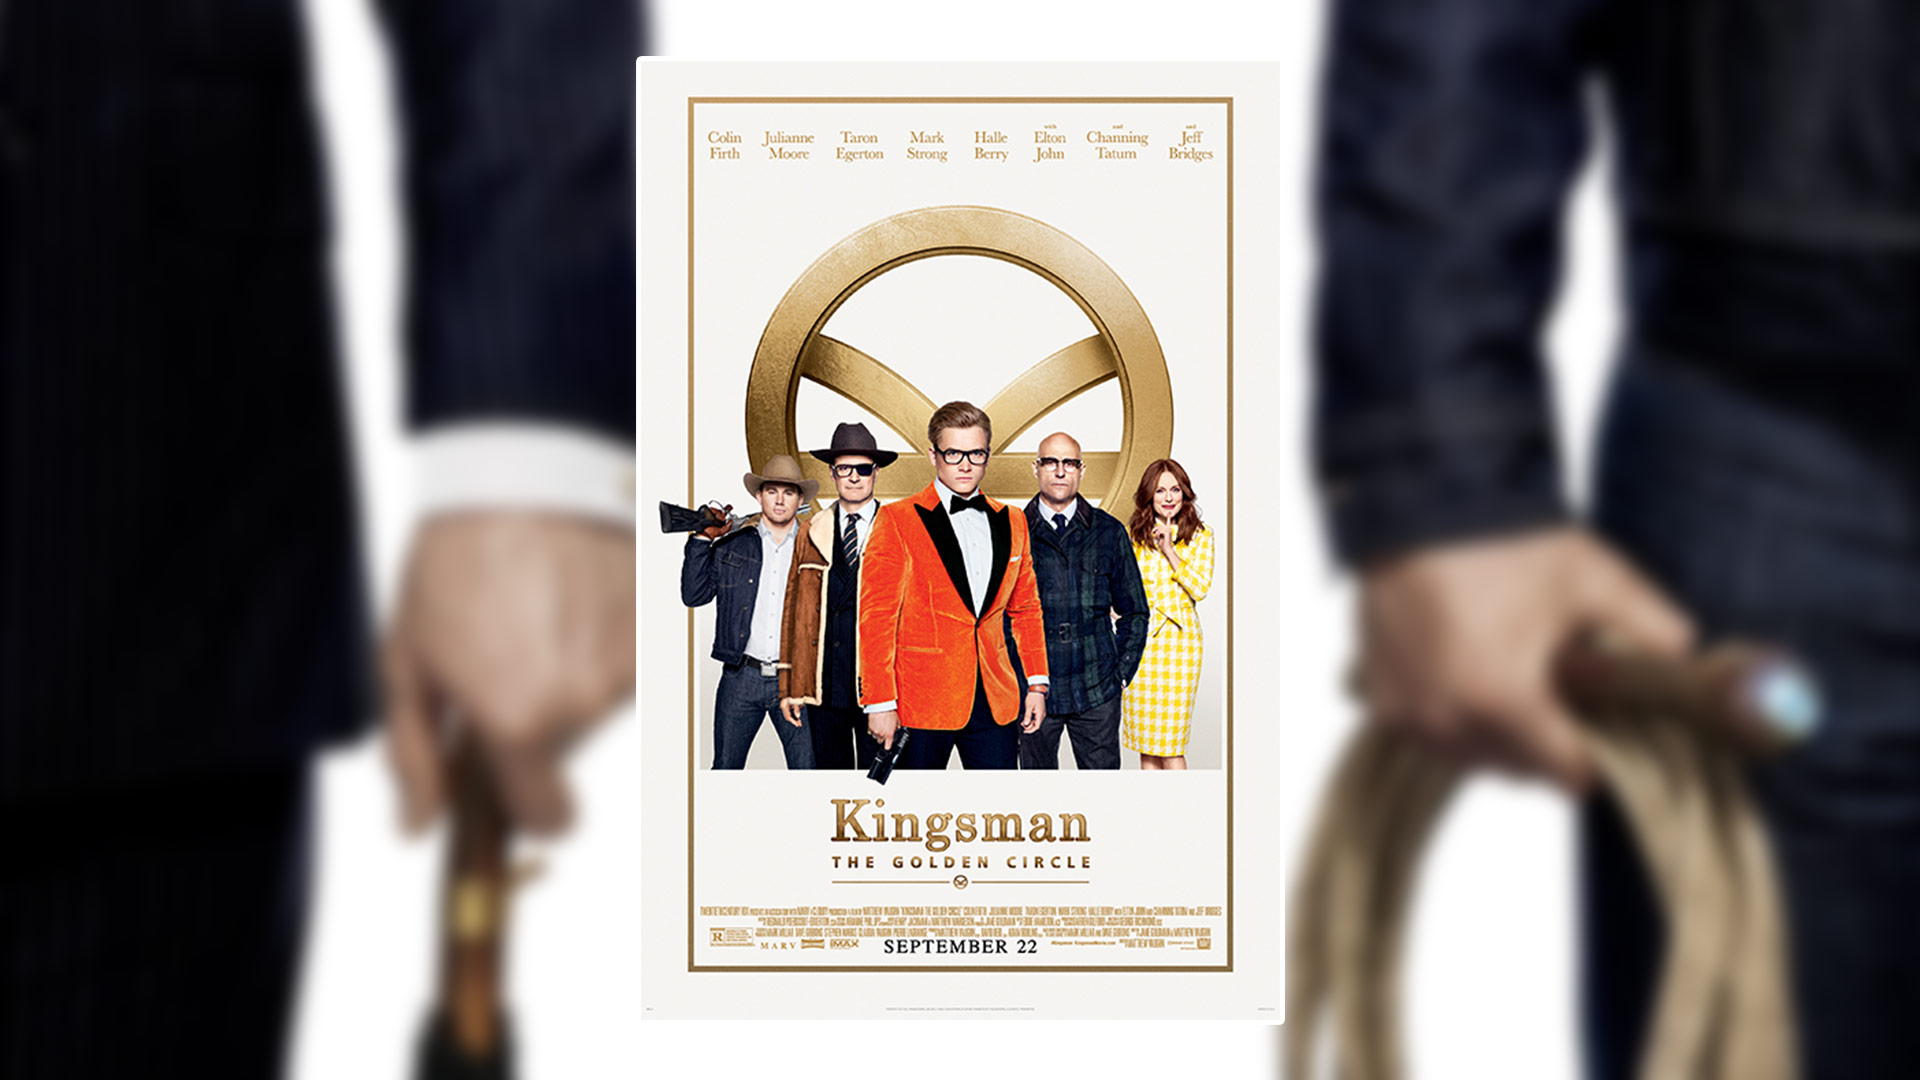 KINGSMAN: THE GOLDEN CIRCLE